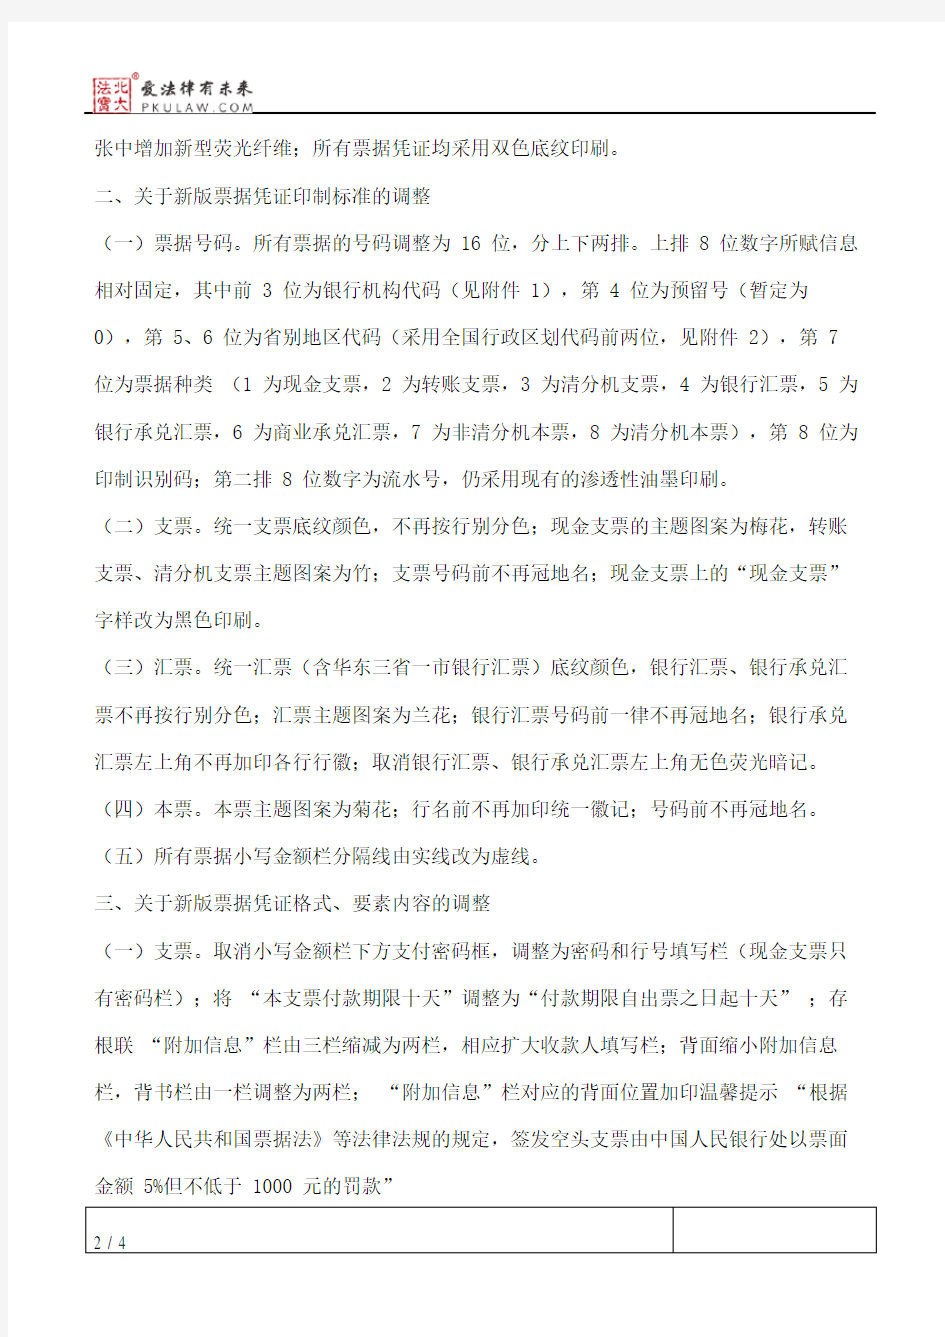 中国人民银行关于启用2010版银行票据凭证的通知